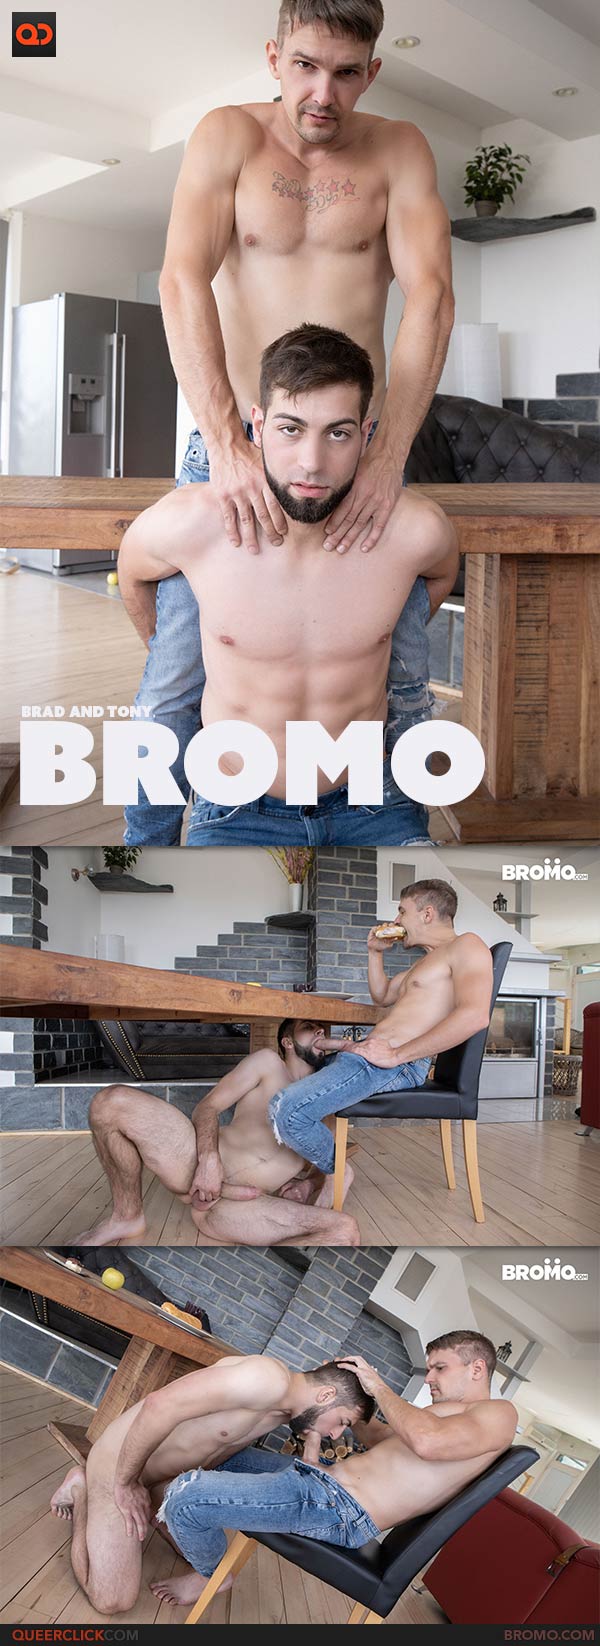 Bromo: Brad and Tony